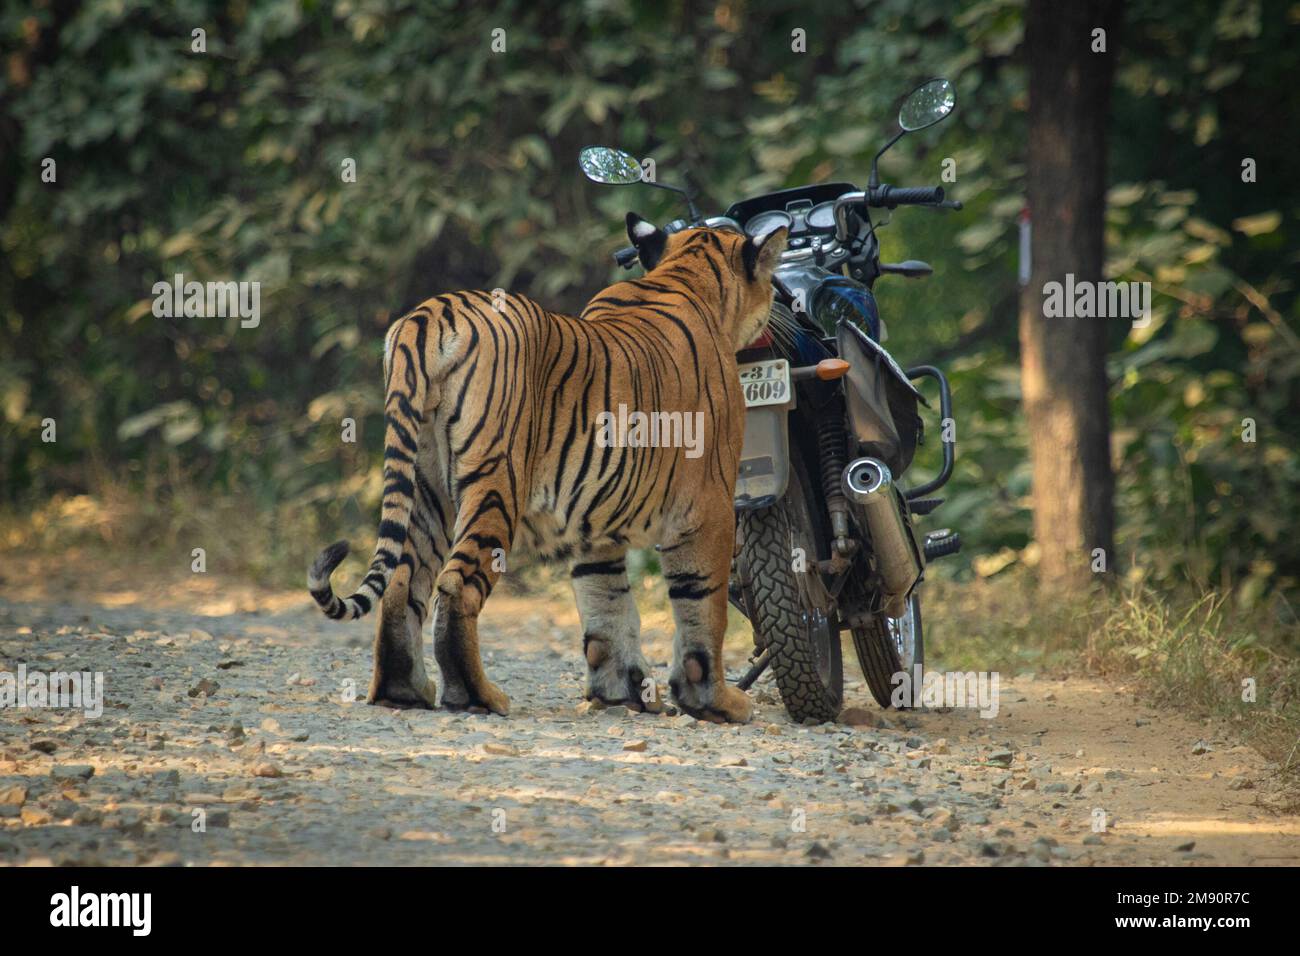 Es riecht seltsam. Indien: DIESE UNGLAUBLICHEN Bilder zeigen, wie neugierige Tiger Radfahrer von der Heimreise abhalten können, während sie ihre Motorräder untersuchen. Eine ima Stockfoto